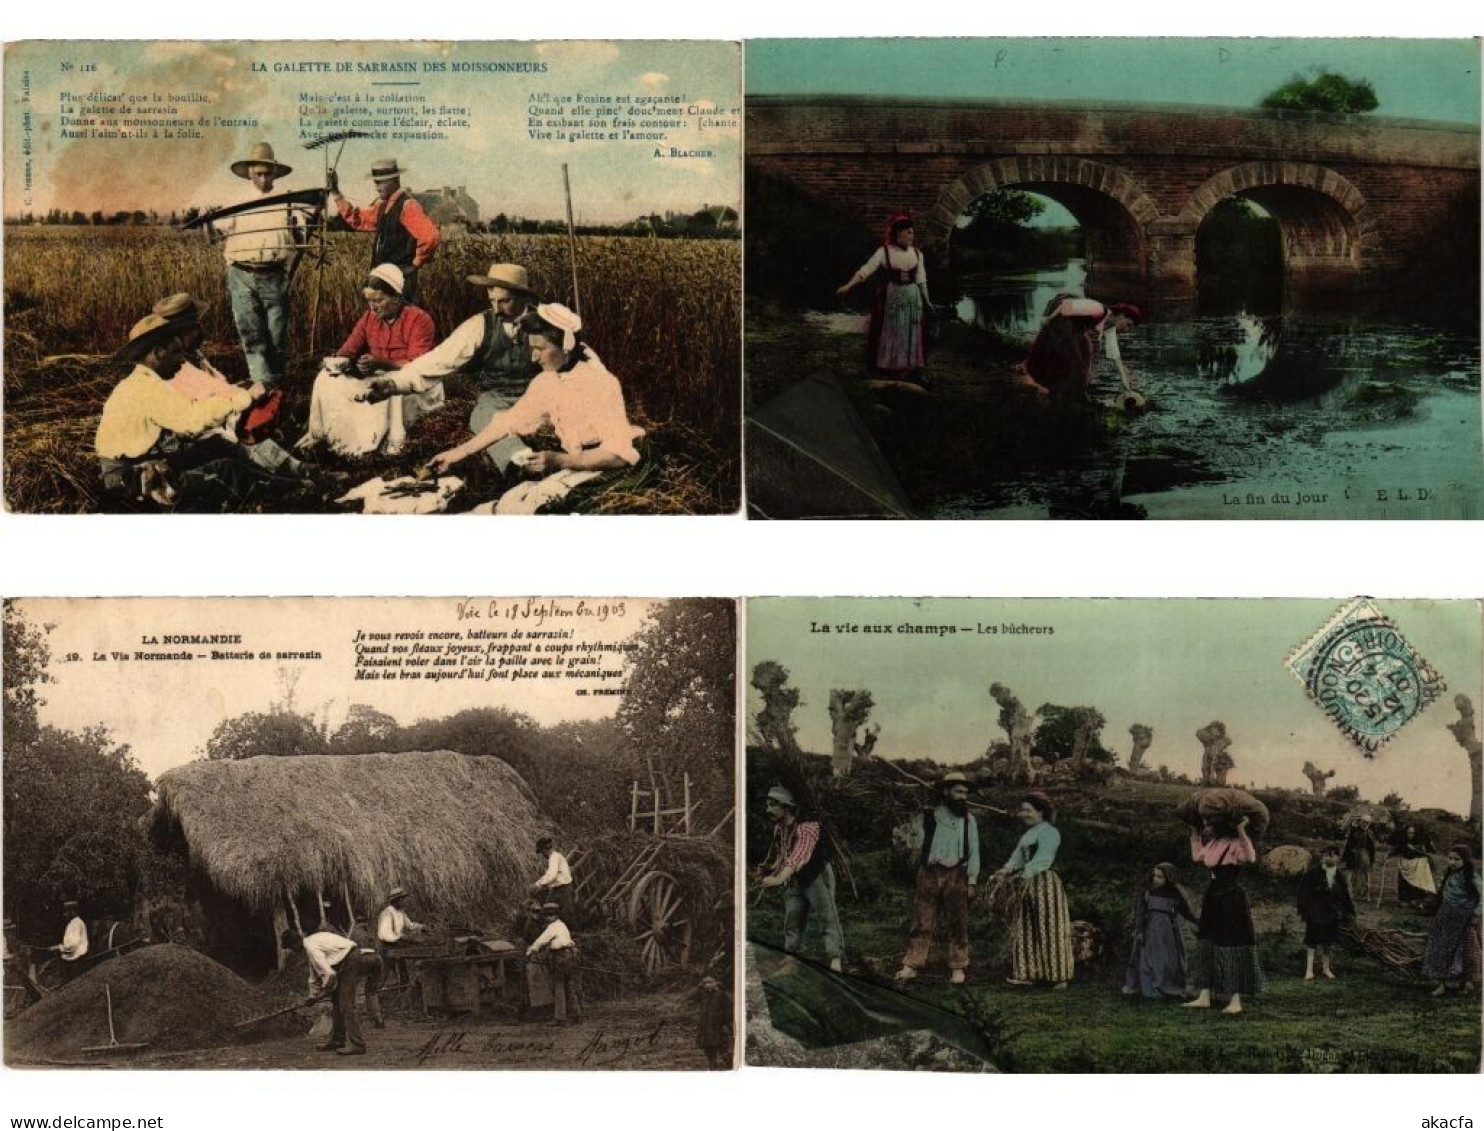 AGRICULTURE LIFE FRANCE, 94 Vintage Postcards pre-1940 (L6196)